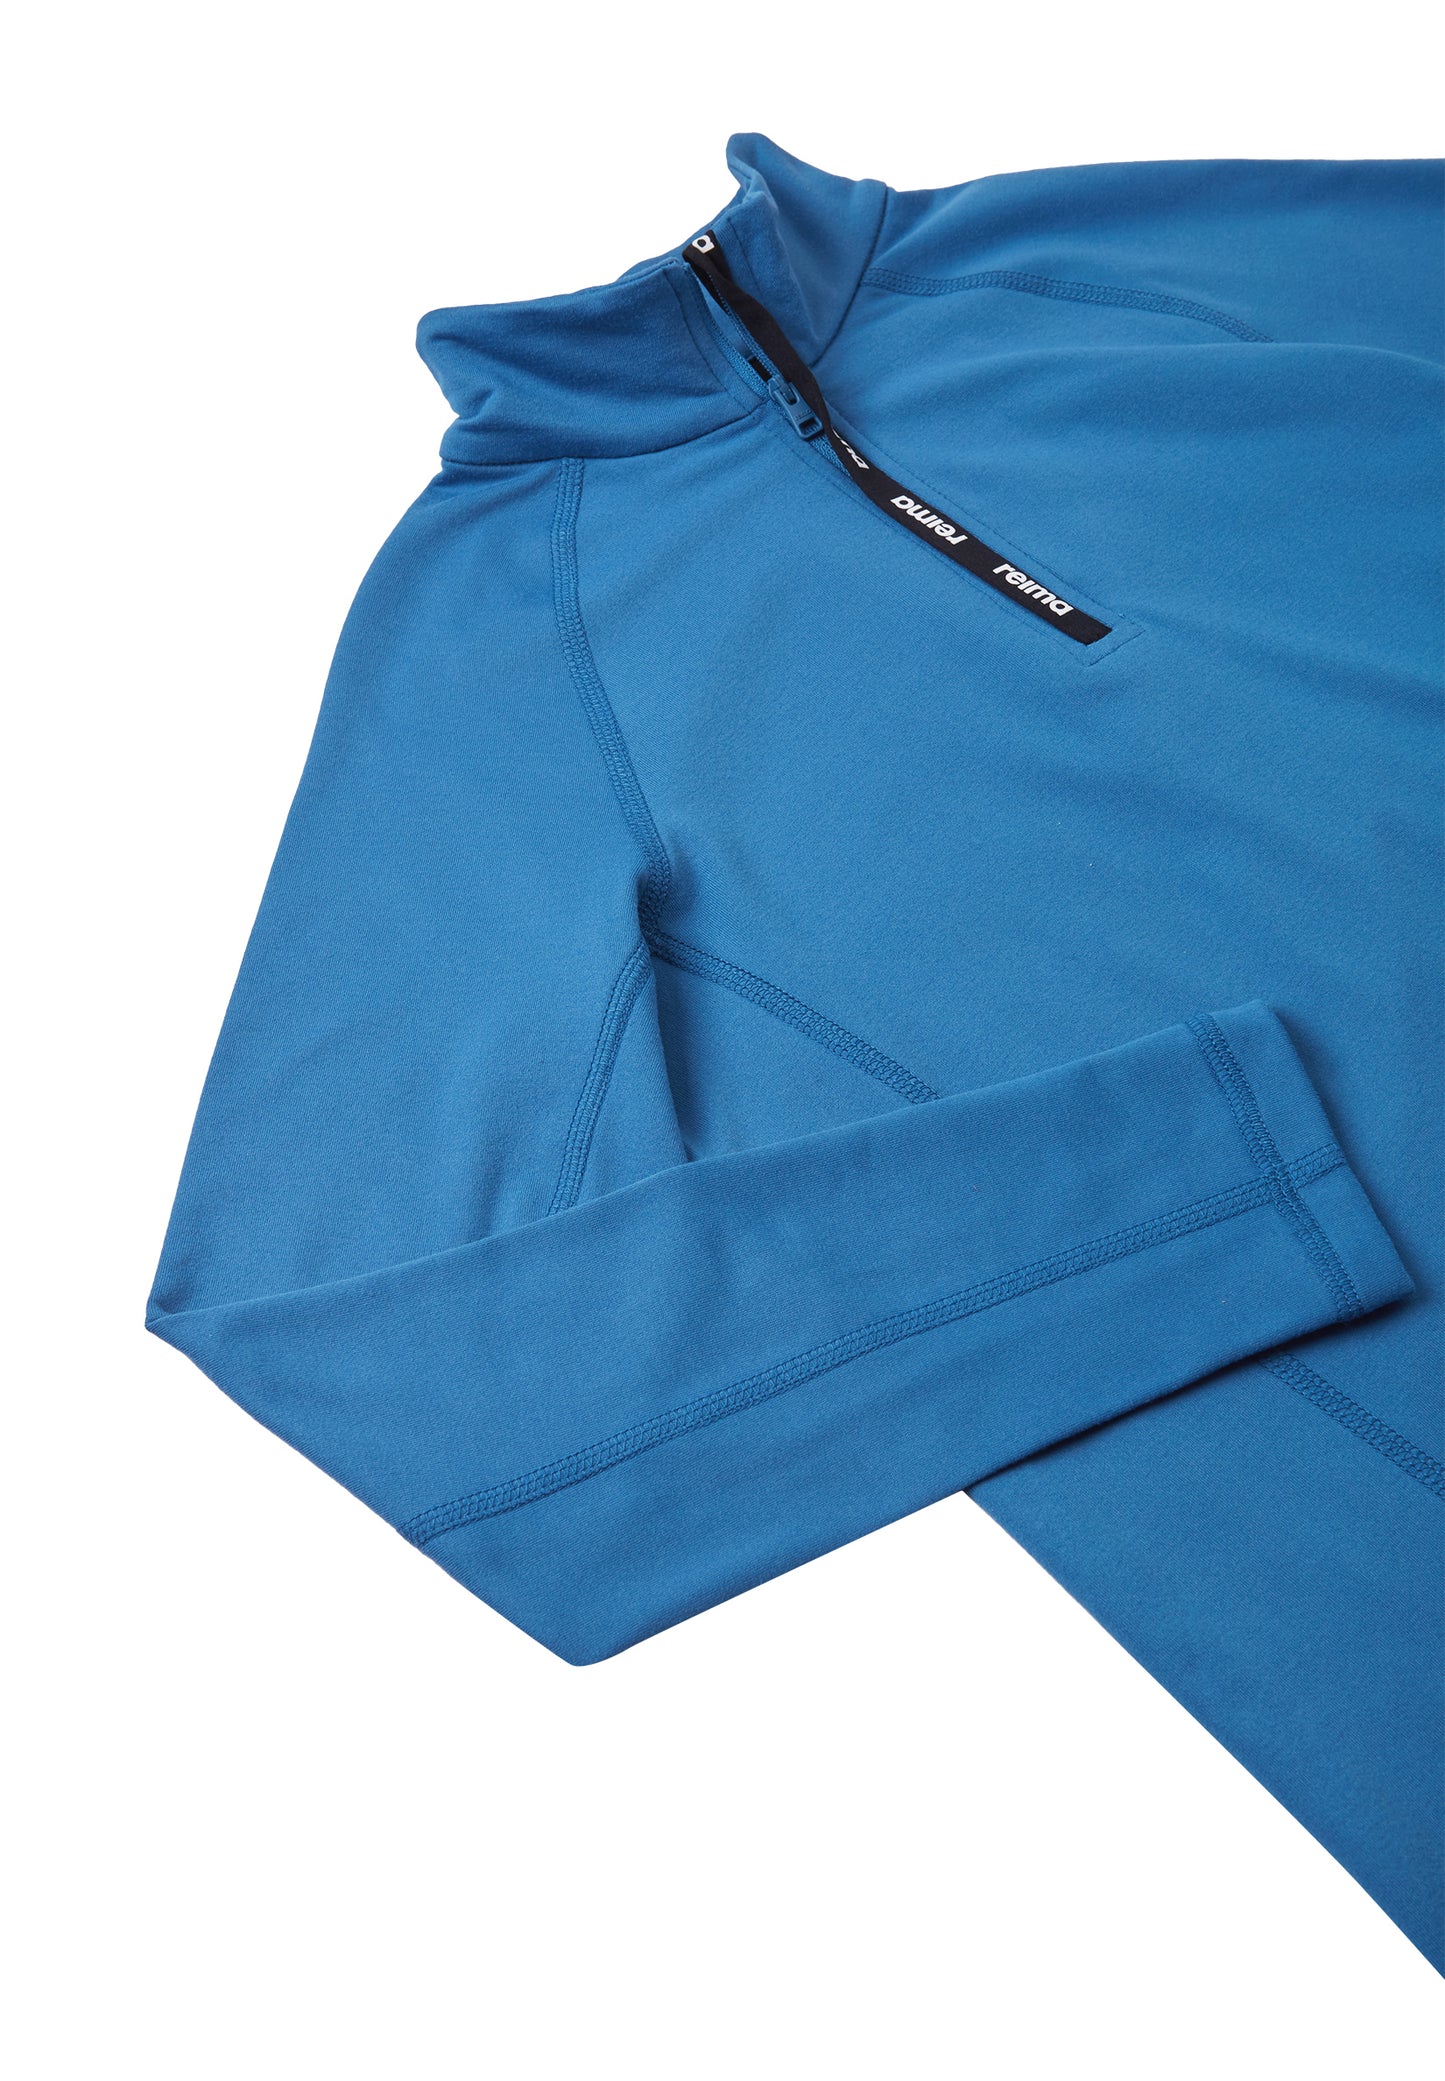 REIMA Shirt/Sweater Velours-Fleece<br> Ladulle <br> Gr. 104 bis 164<br>atmungsaktiv<br> aussen glattes Material <br>zum Separat- oder Darunter-Tragen<br> warm, 225 g/m2 Dicke